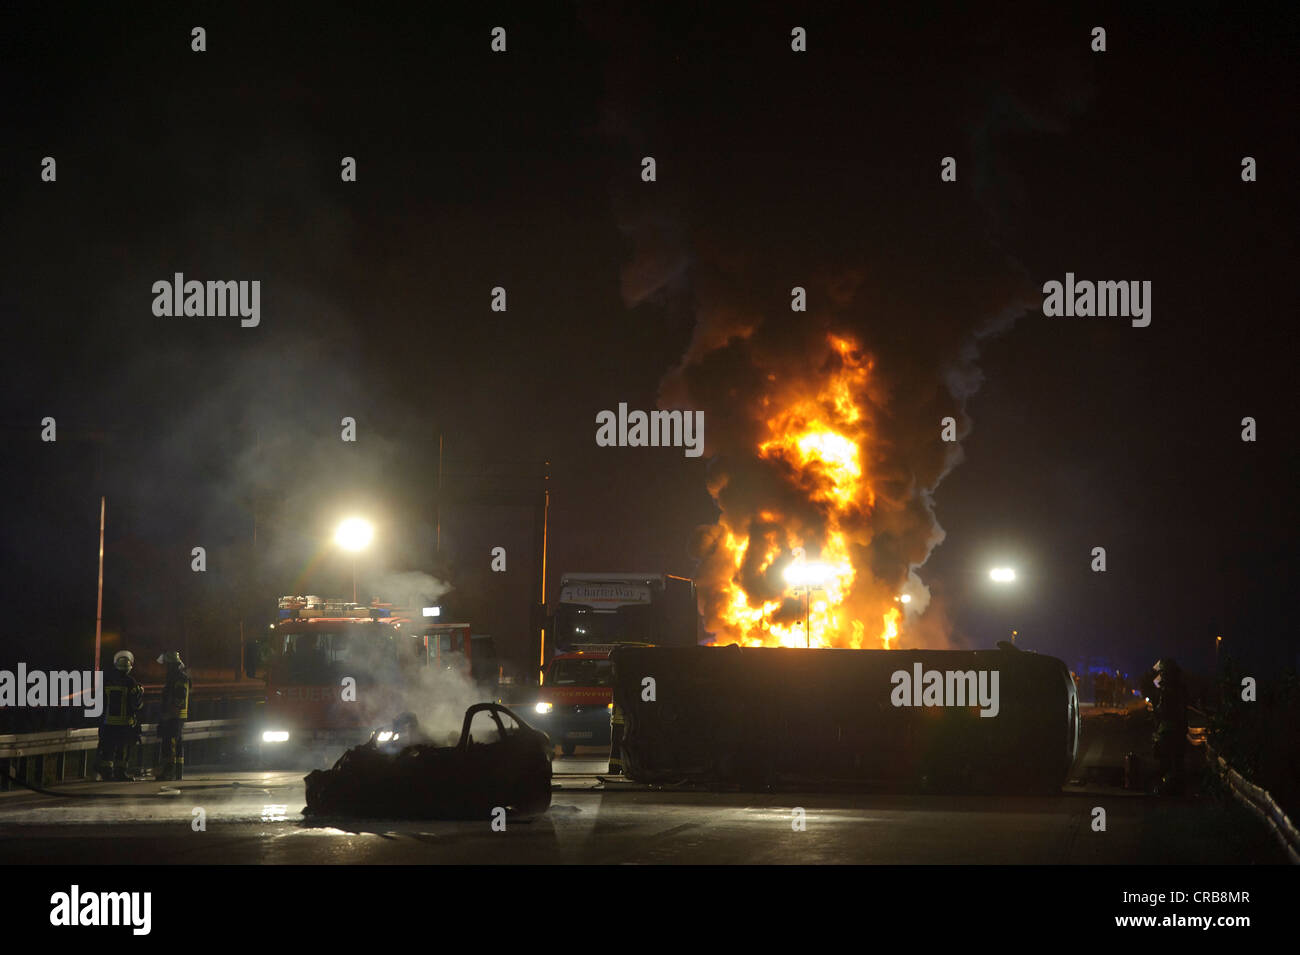 Totalmente quemado coches deportivos BMW junto a un furgón de transporte tumbado delante de un camión ardiendo y un camión tanque de aceite Foto de stock